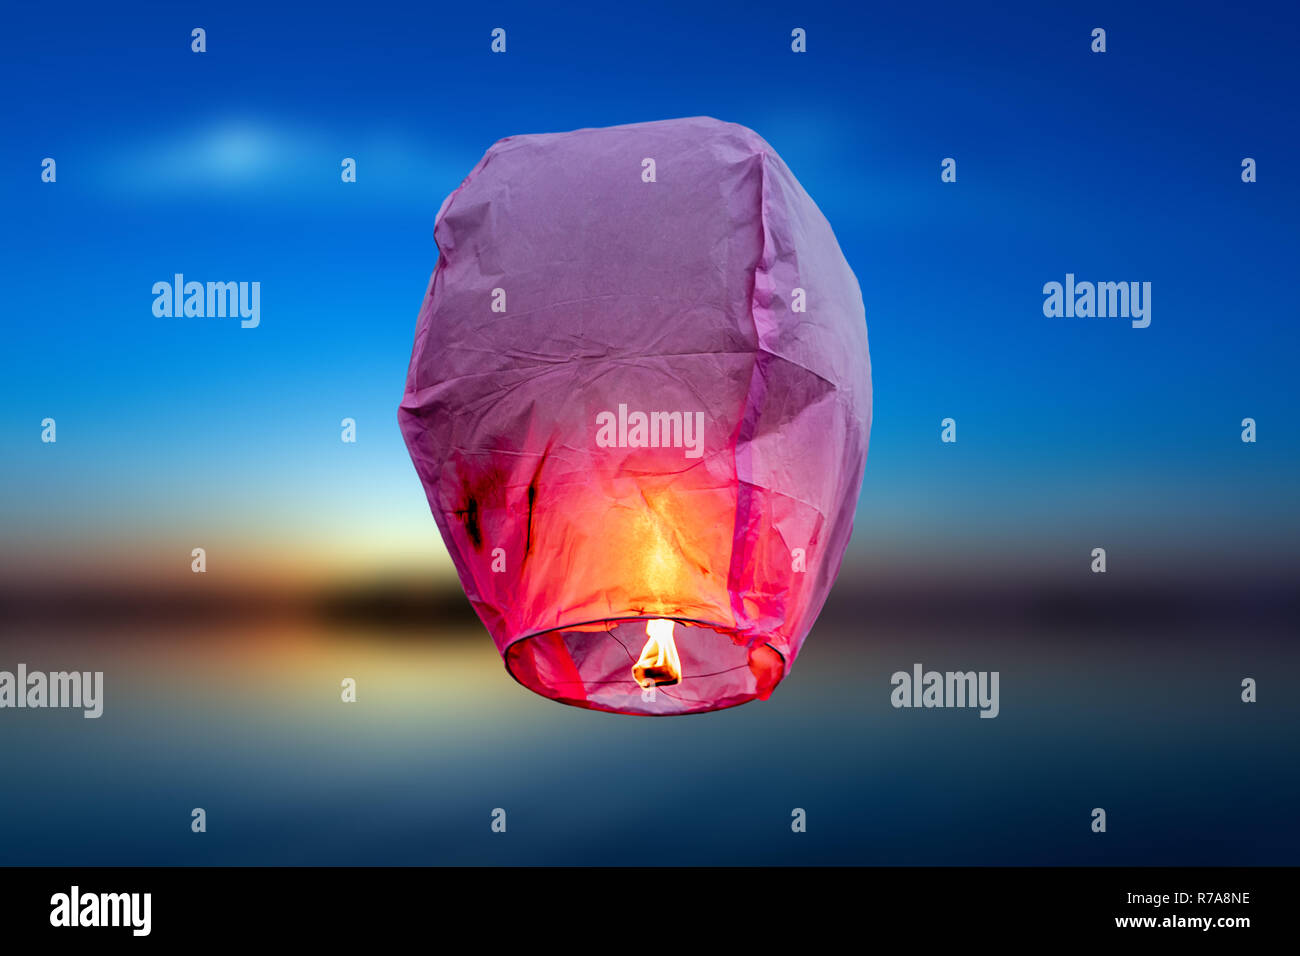 Lanterne volanti immagini e fotografie stock ad alta risoluzione - Alamy